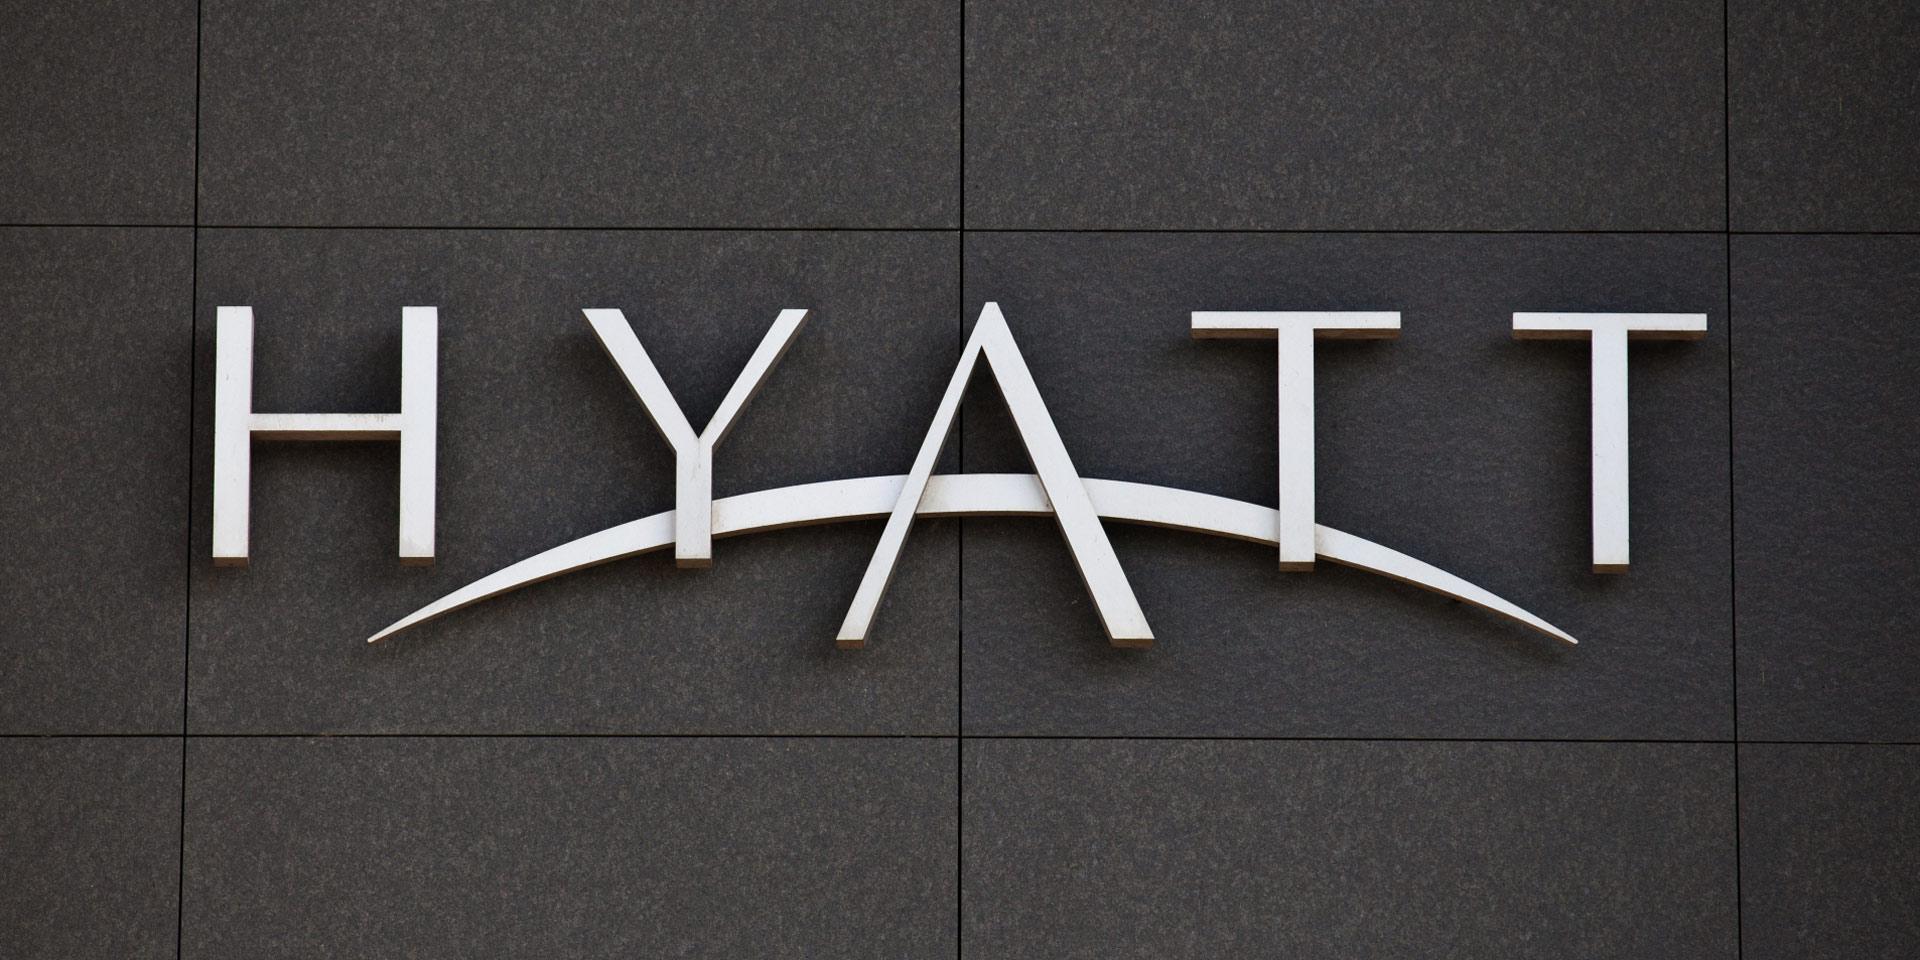 Hyatt Logo - Hyatt Logo From A Lounge